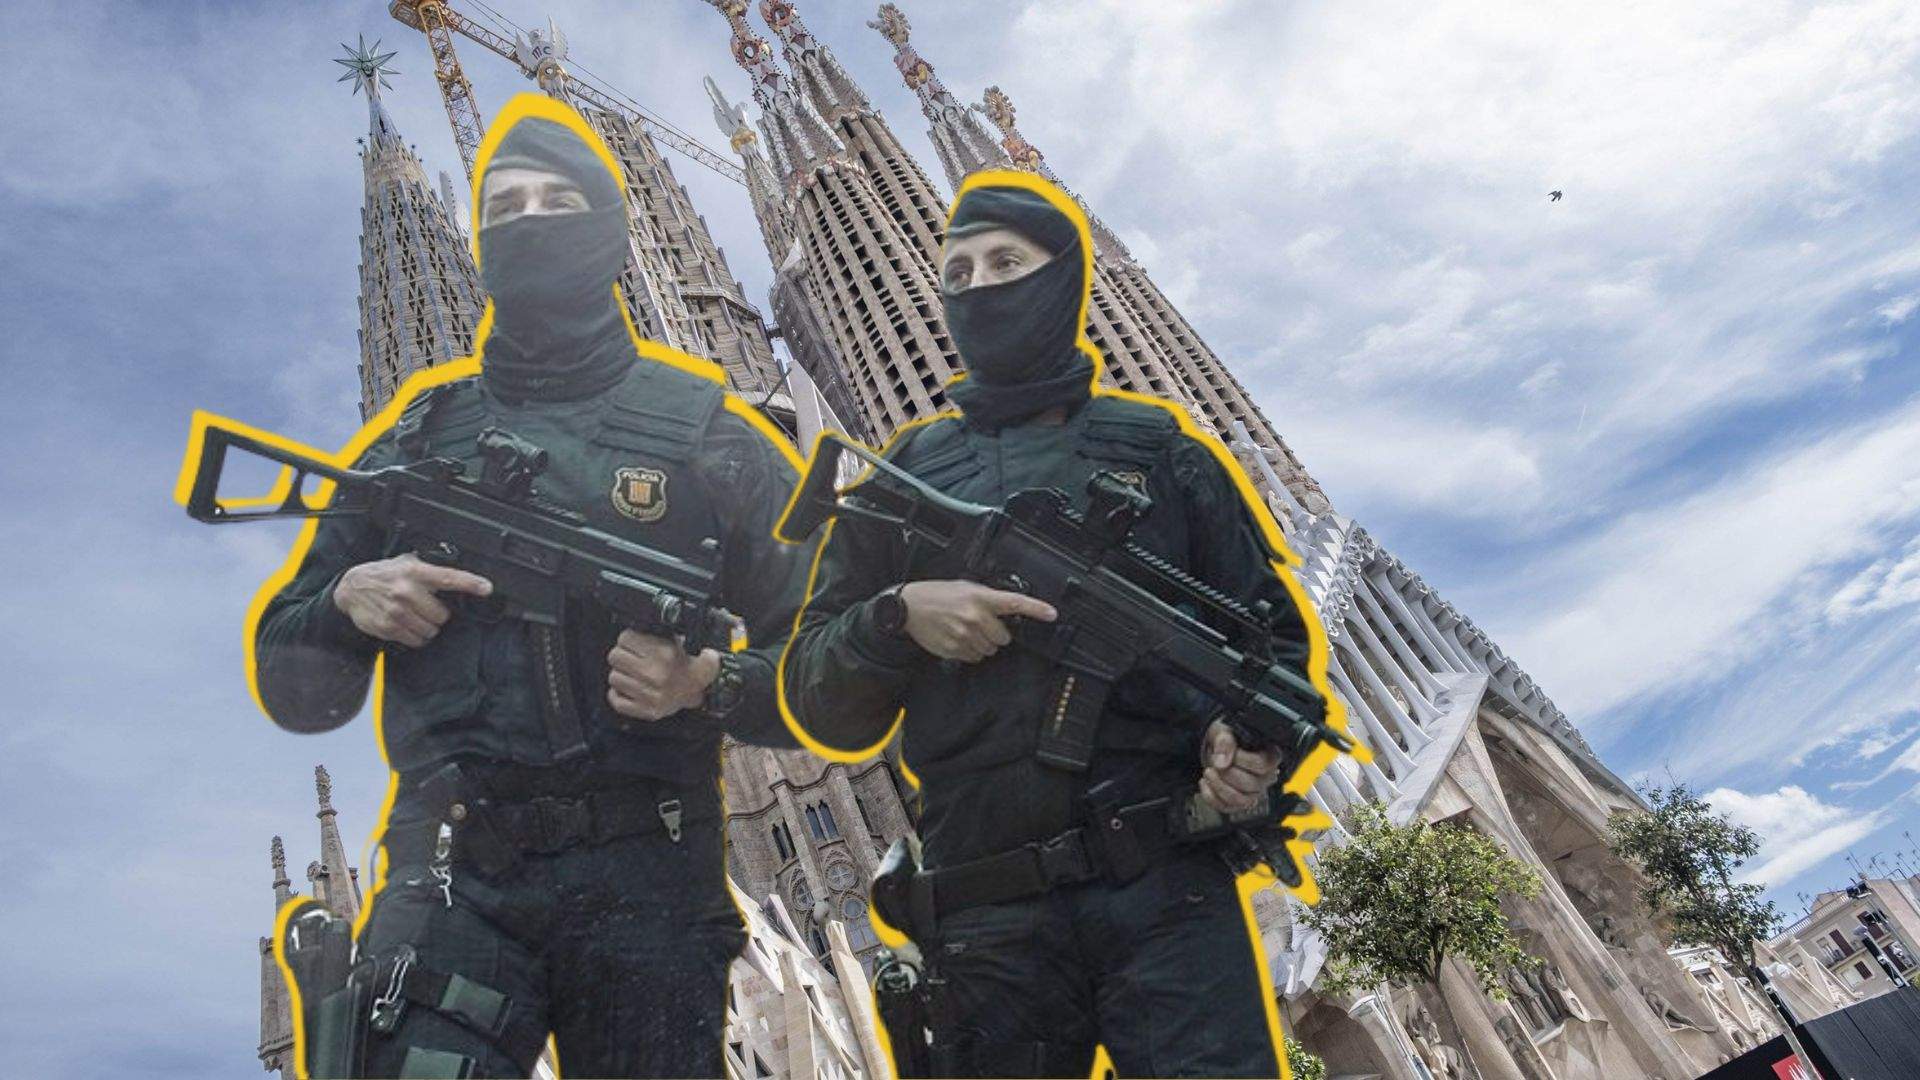 Els Mossos reforcen la vigilància a la Sagrada Família i la Catedral de Barcelona per risc gihadista